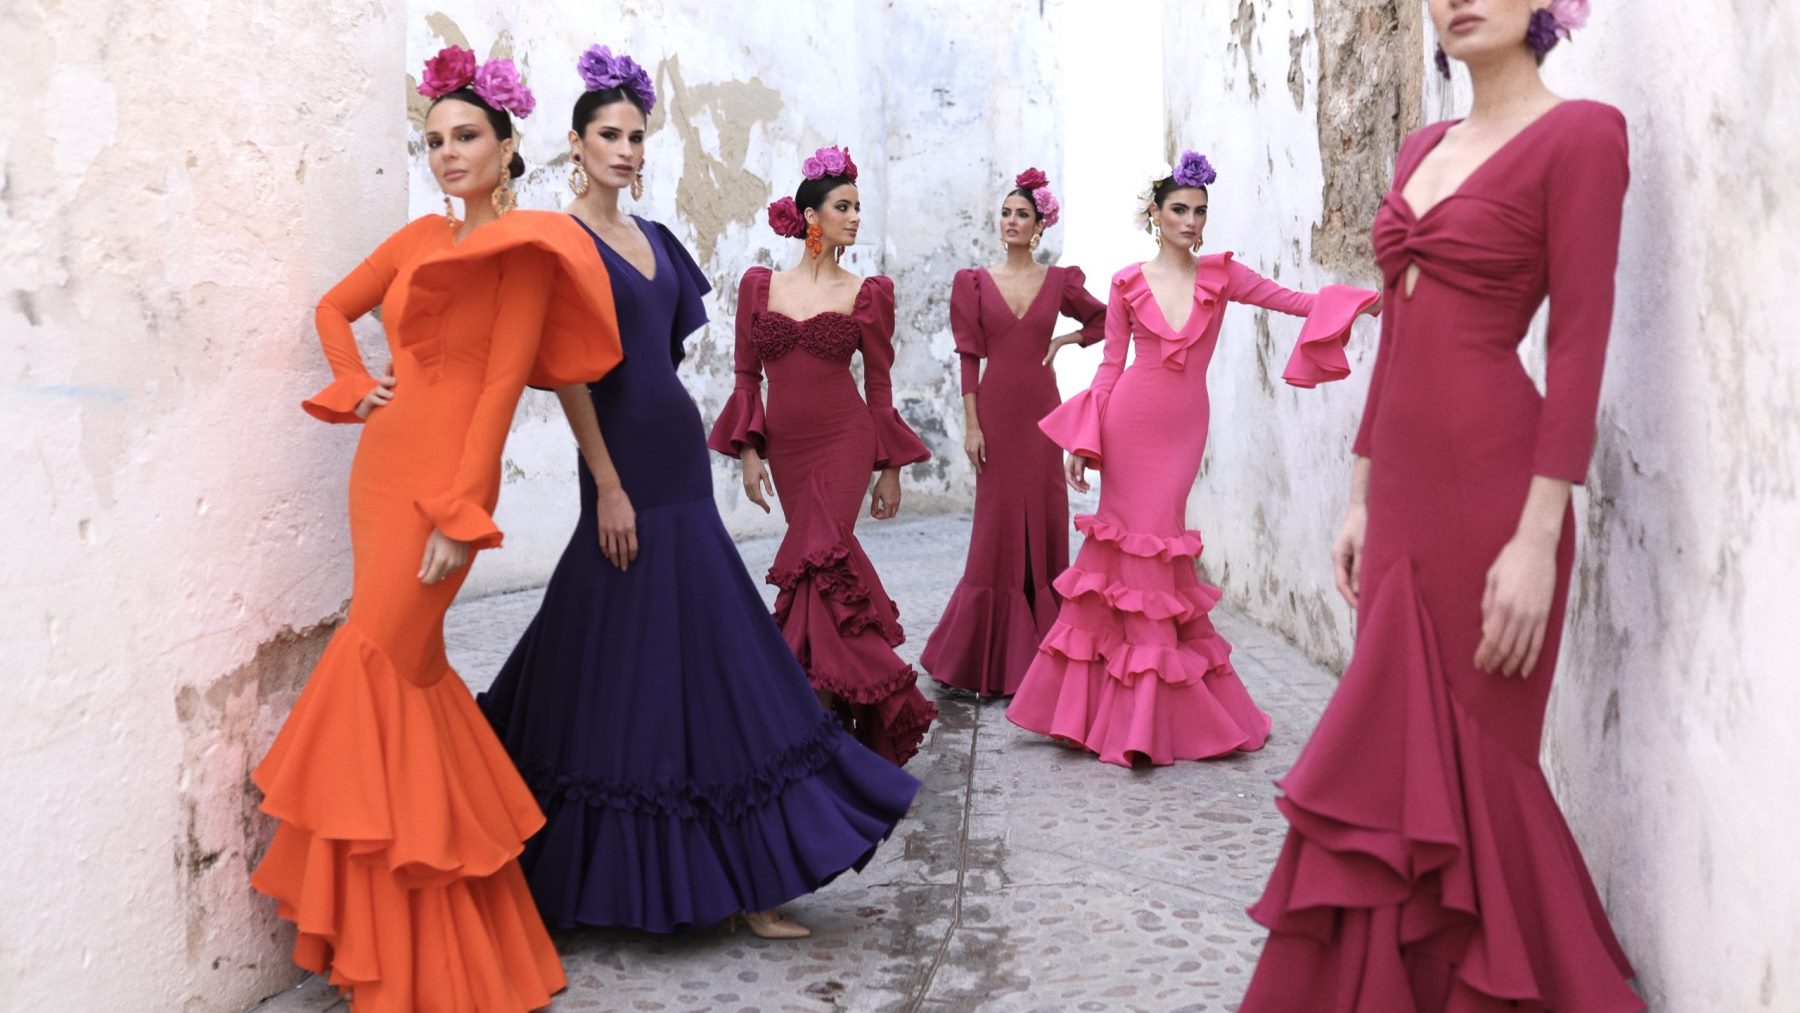 Disfraz de Flamenca Rosa para mujer